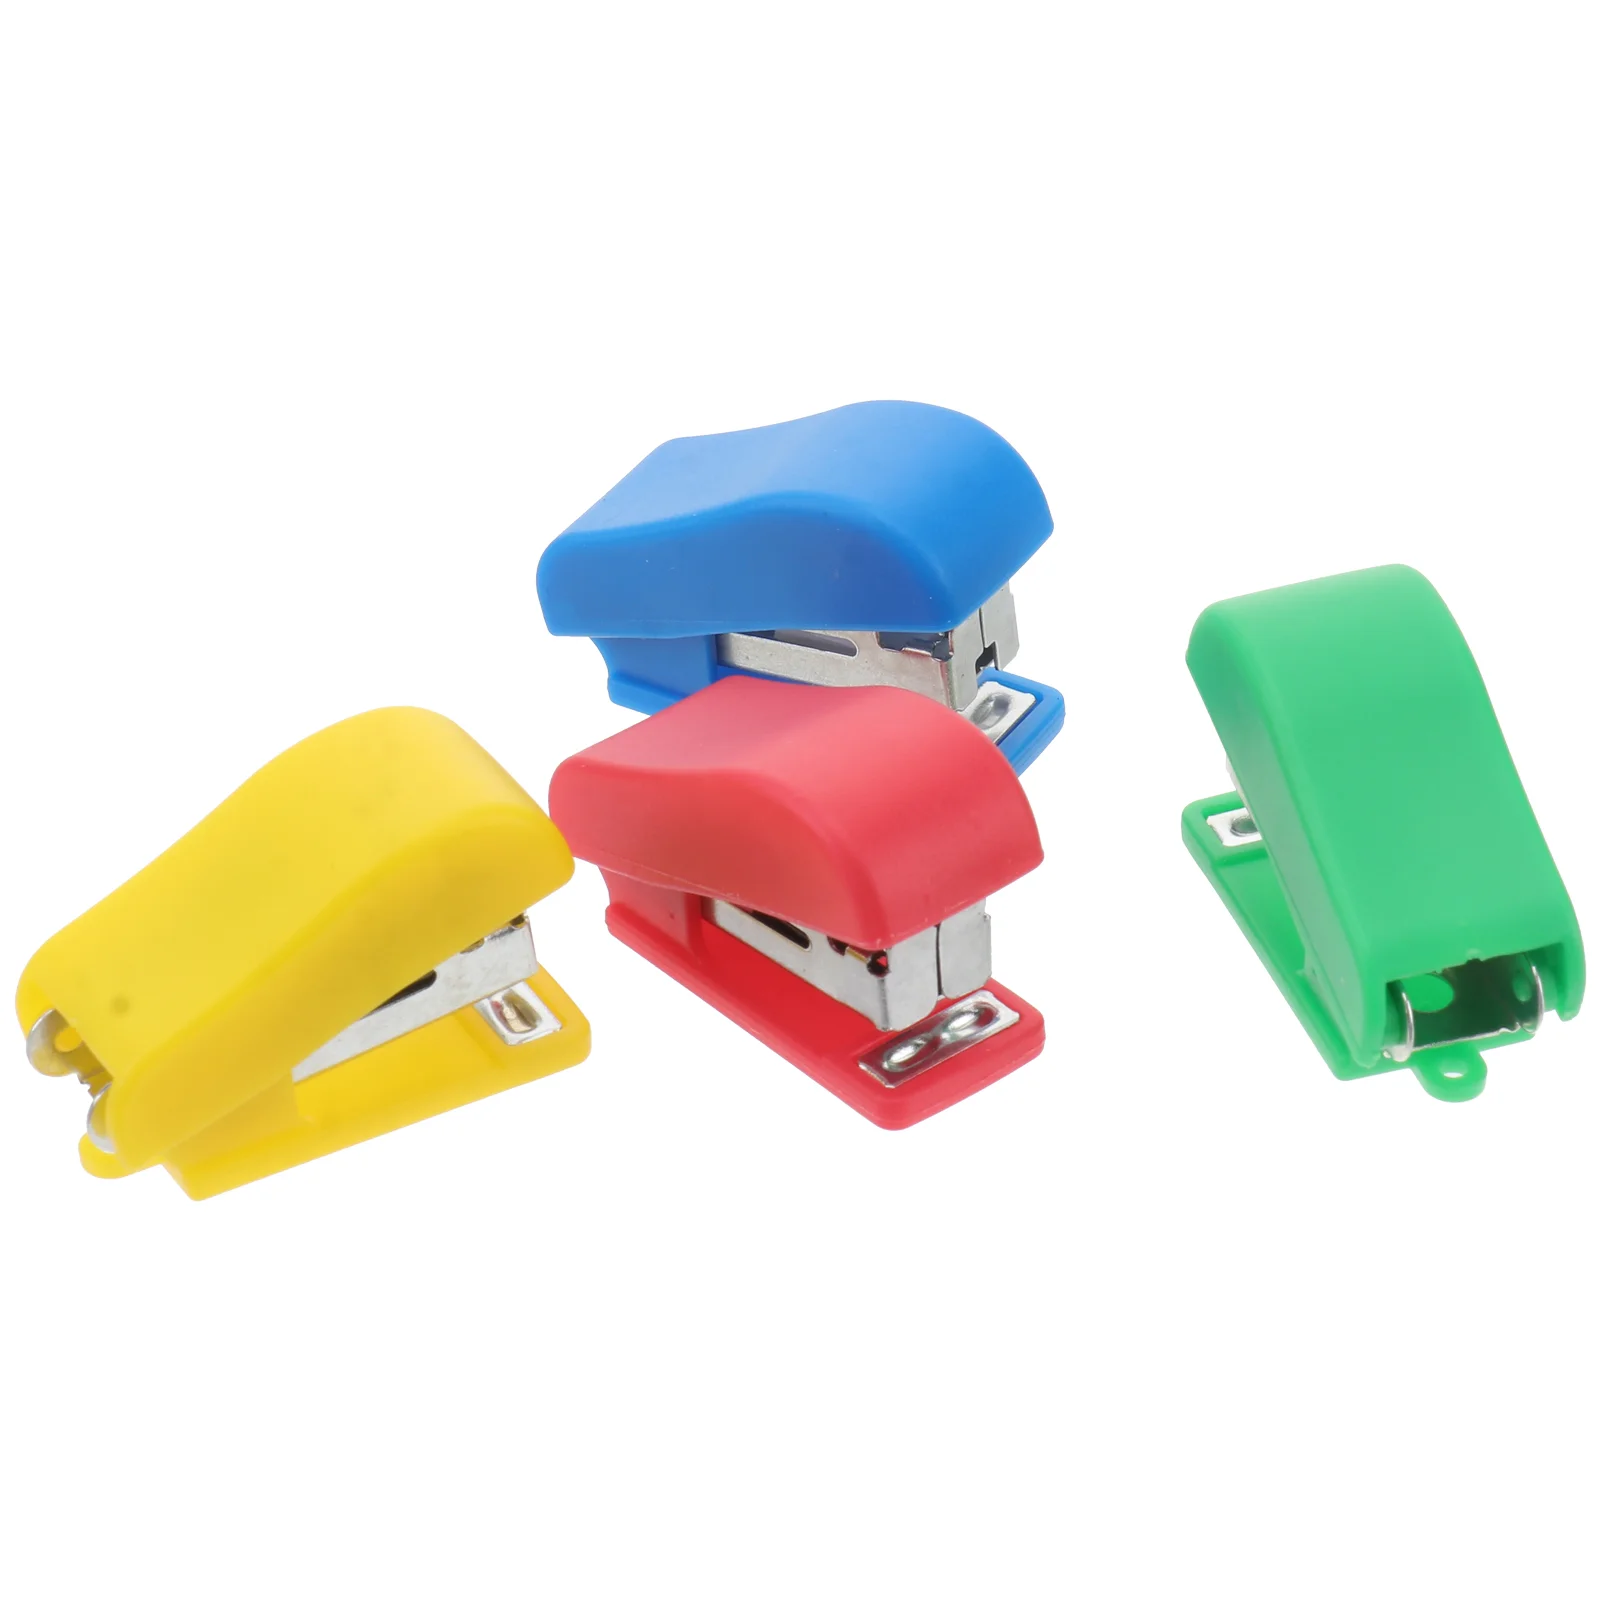 

4pcs Cartoon Mini Desktop Stapler Hand Stapler Office Home Stapler (Random Color)